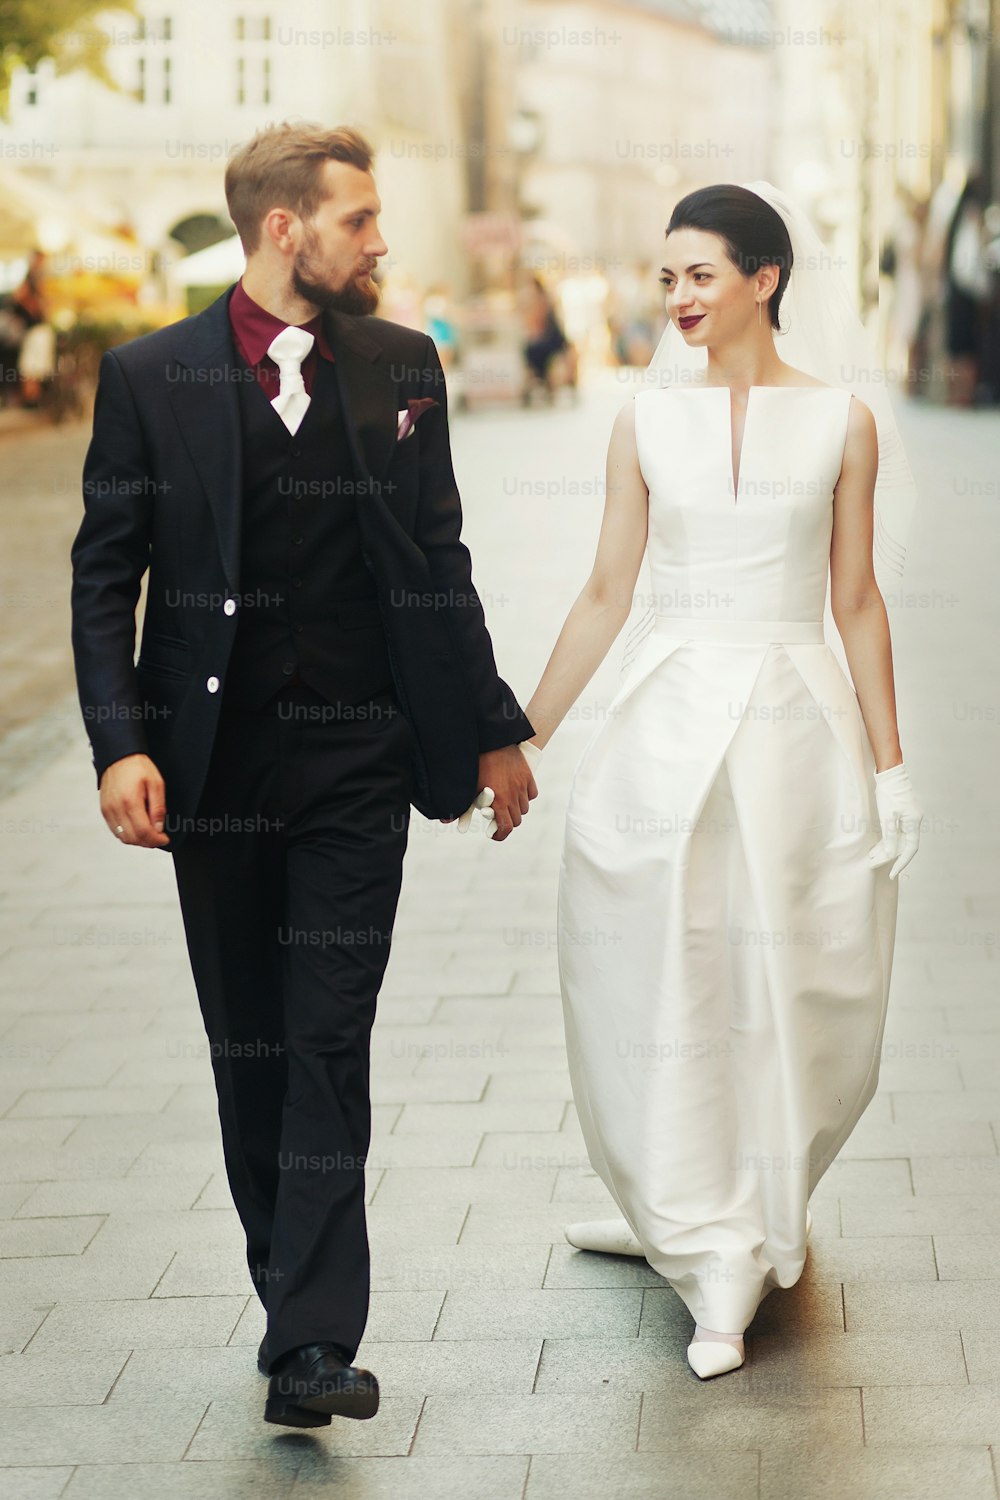 手をつないで街の通りを歩く豪華な結婚式のカップル。エレガントでゴージャスな花嫁とスタイリッシュな新郎の笑顔。レトロなスタイル。ロマンチックなひととき